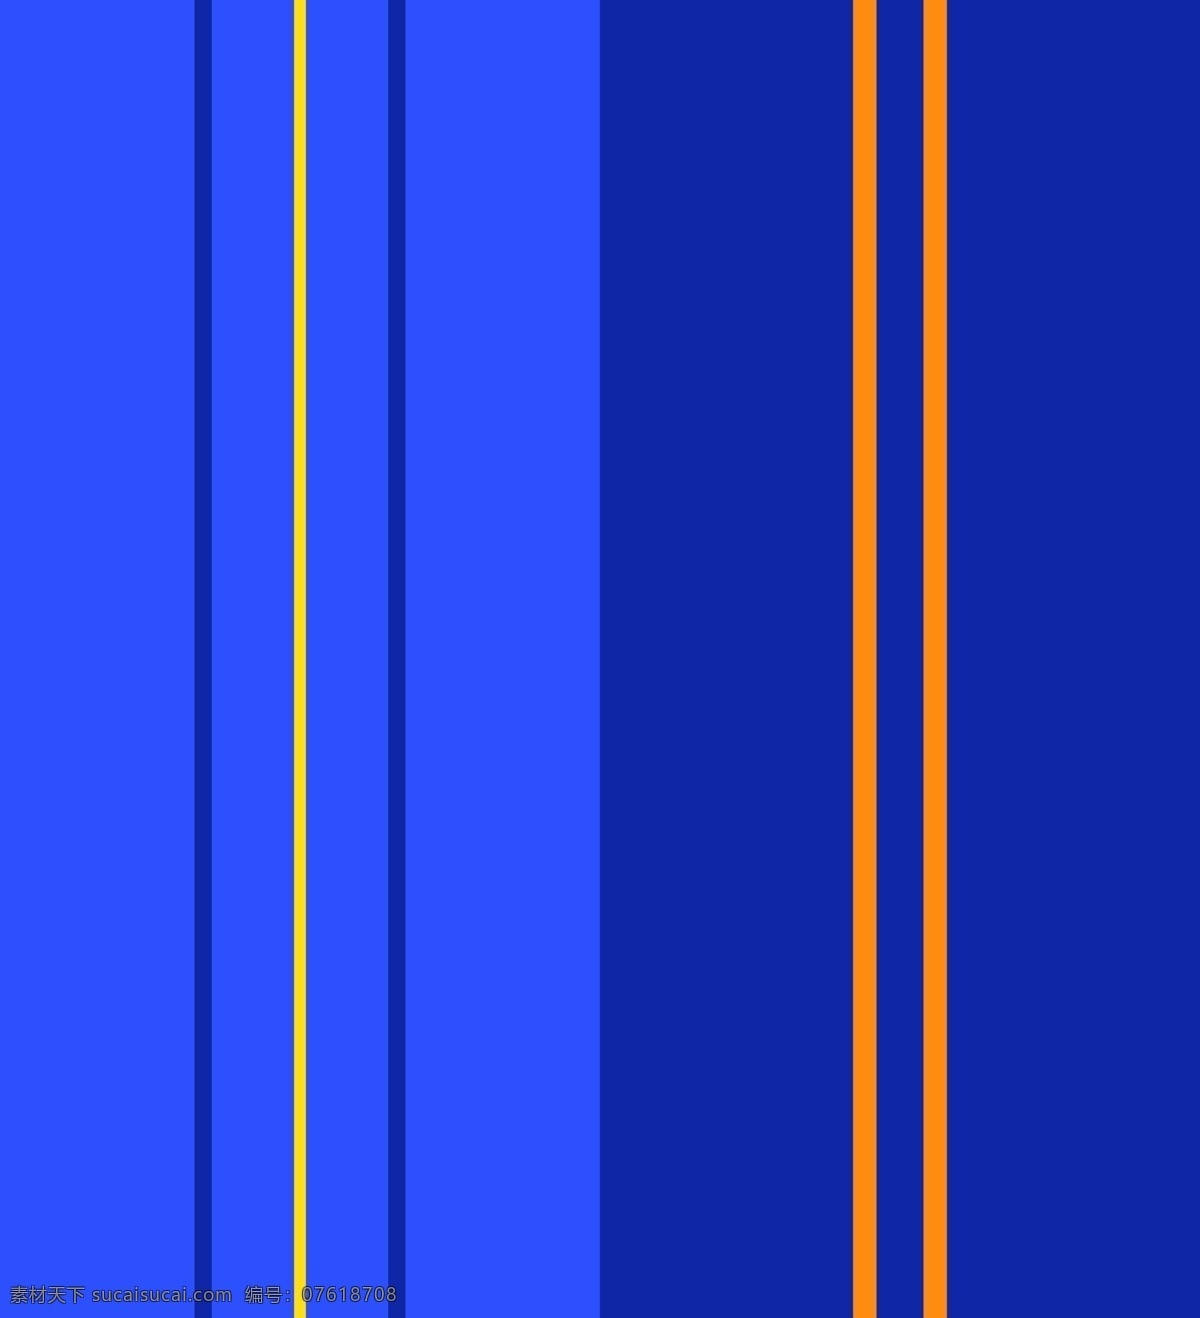 苏格兰 格子 矢量图 蓝色格子 斜线纹格子 格子图案 复古格子 巴宝莉格子 底纹边框 条纹线条